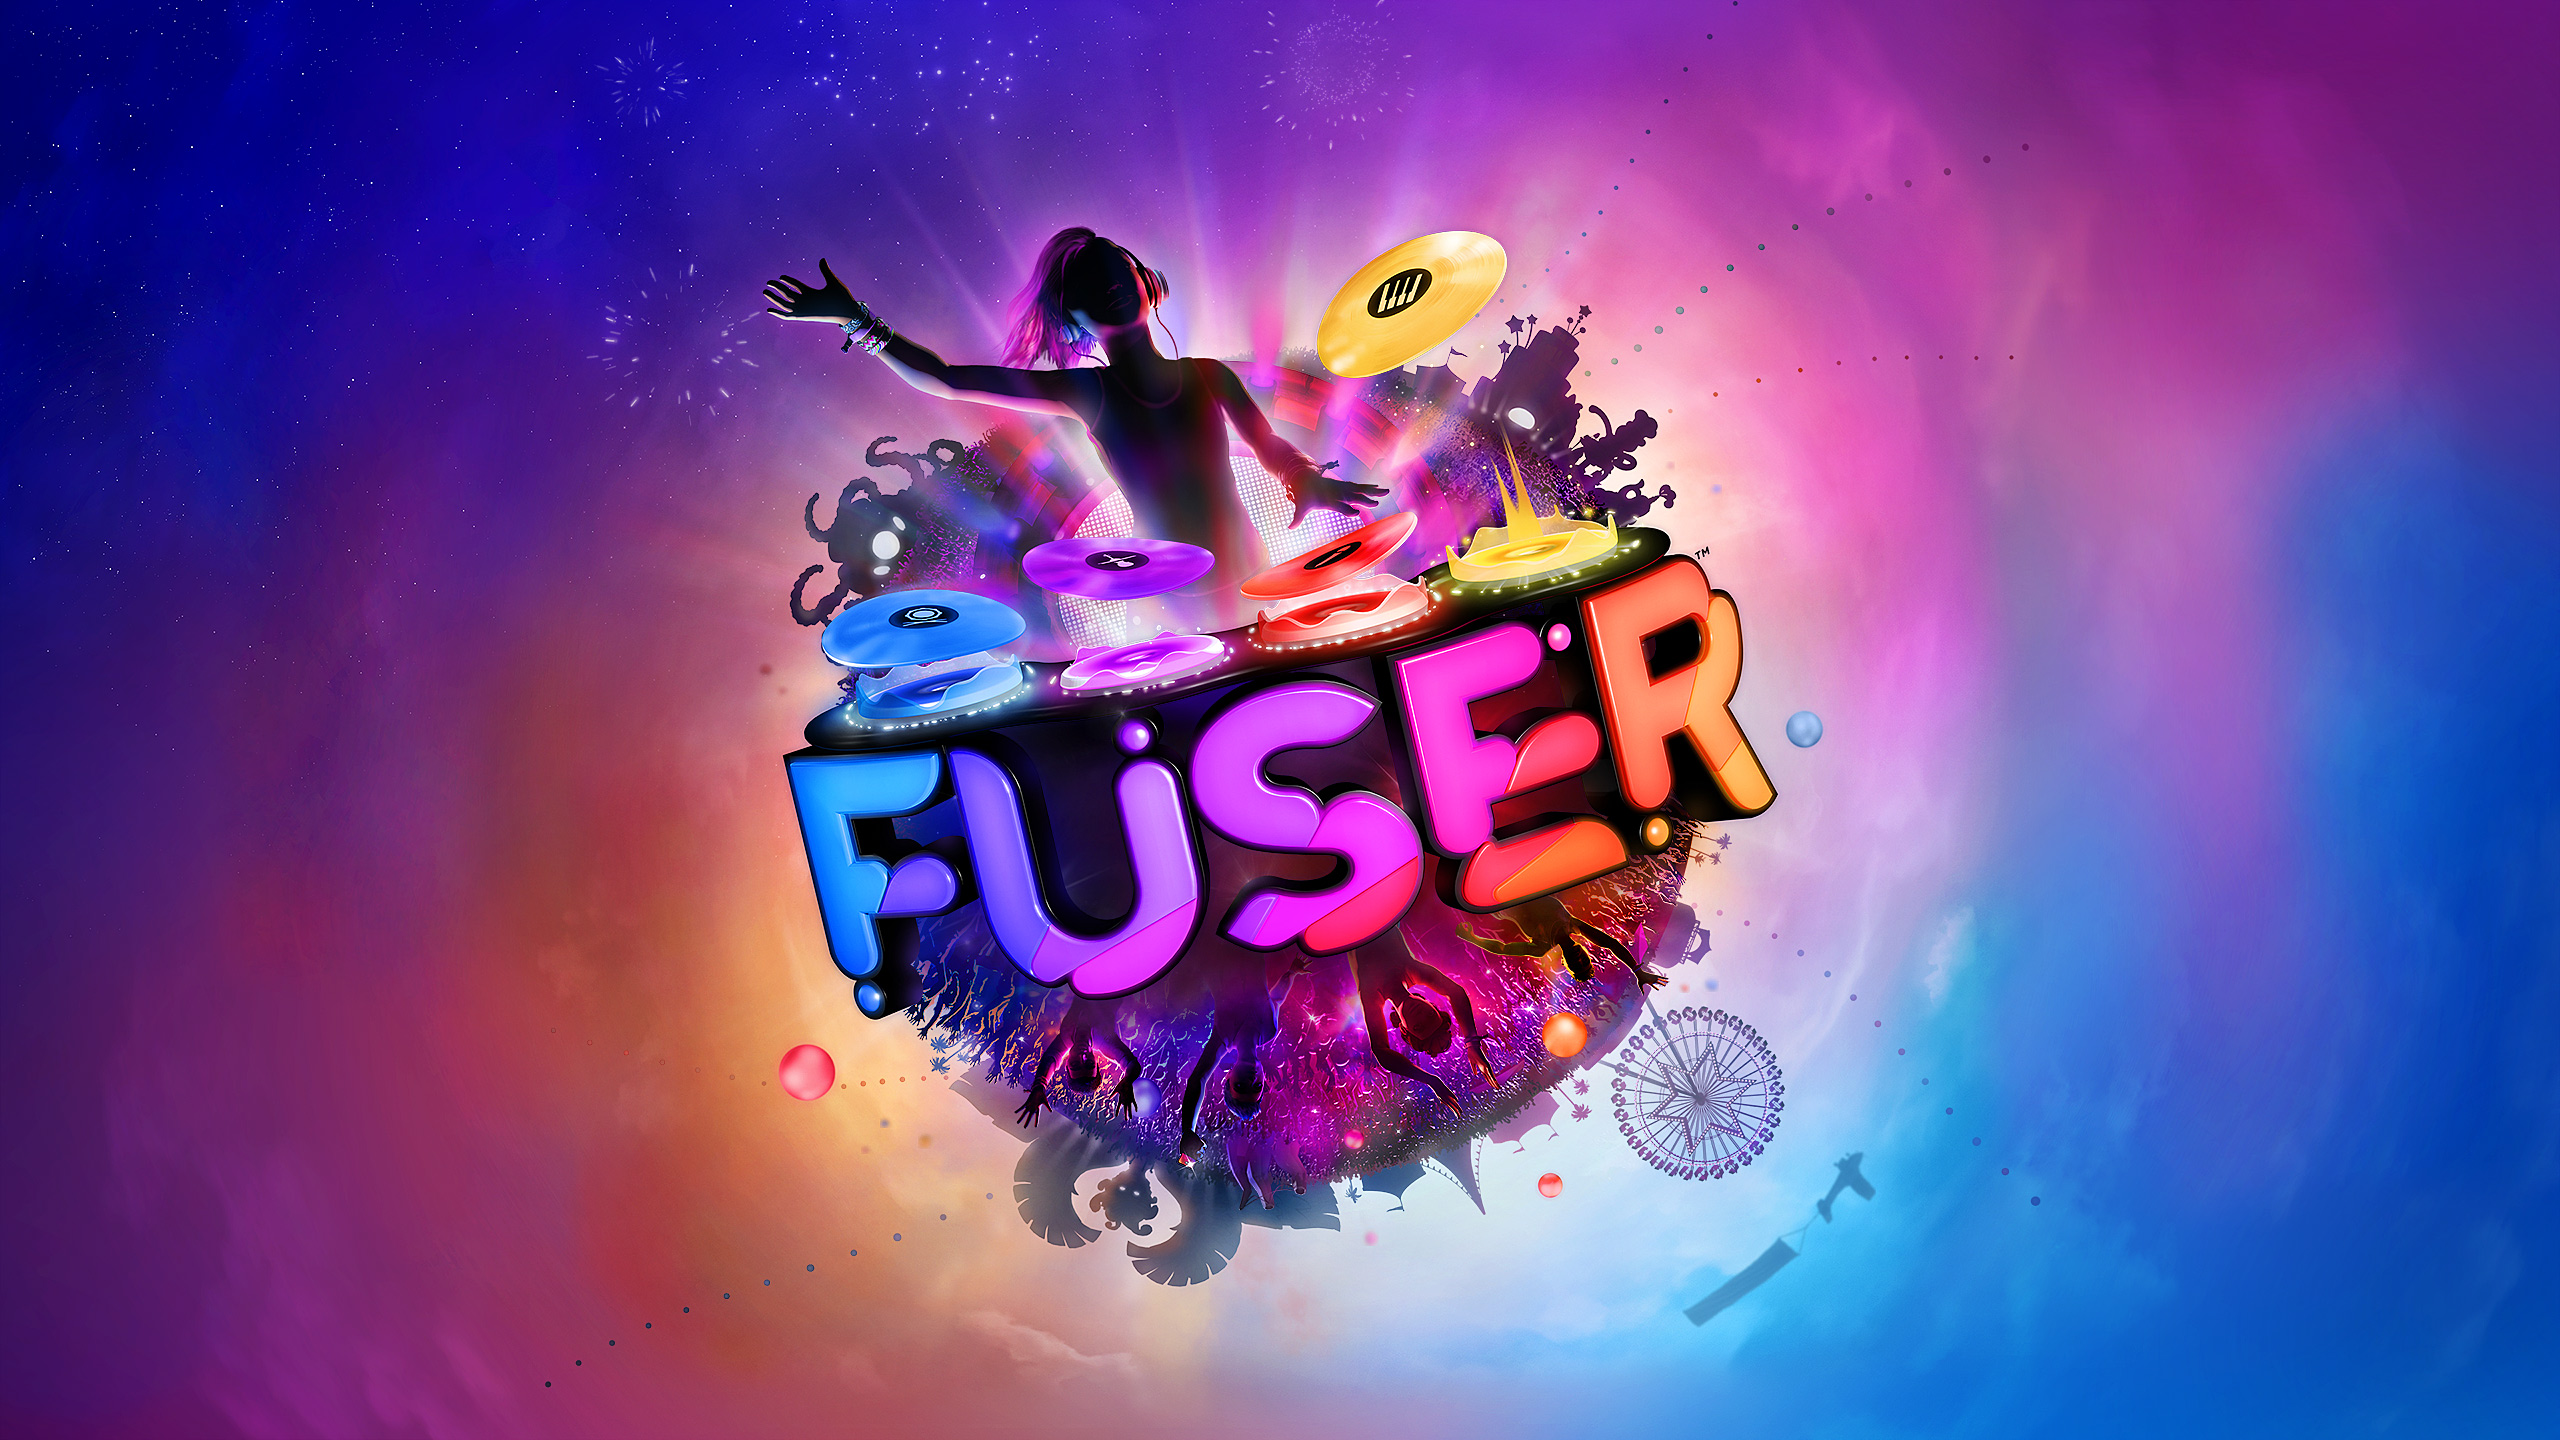 Fuser PC Version Game Free Download